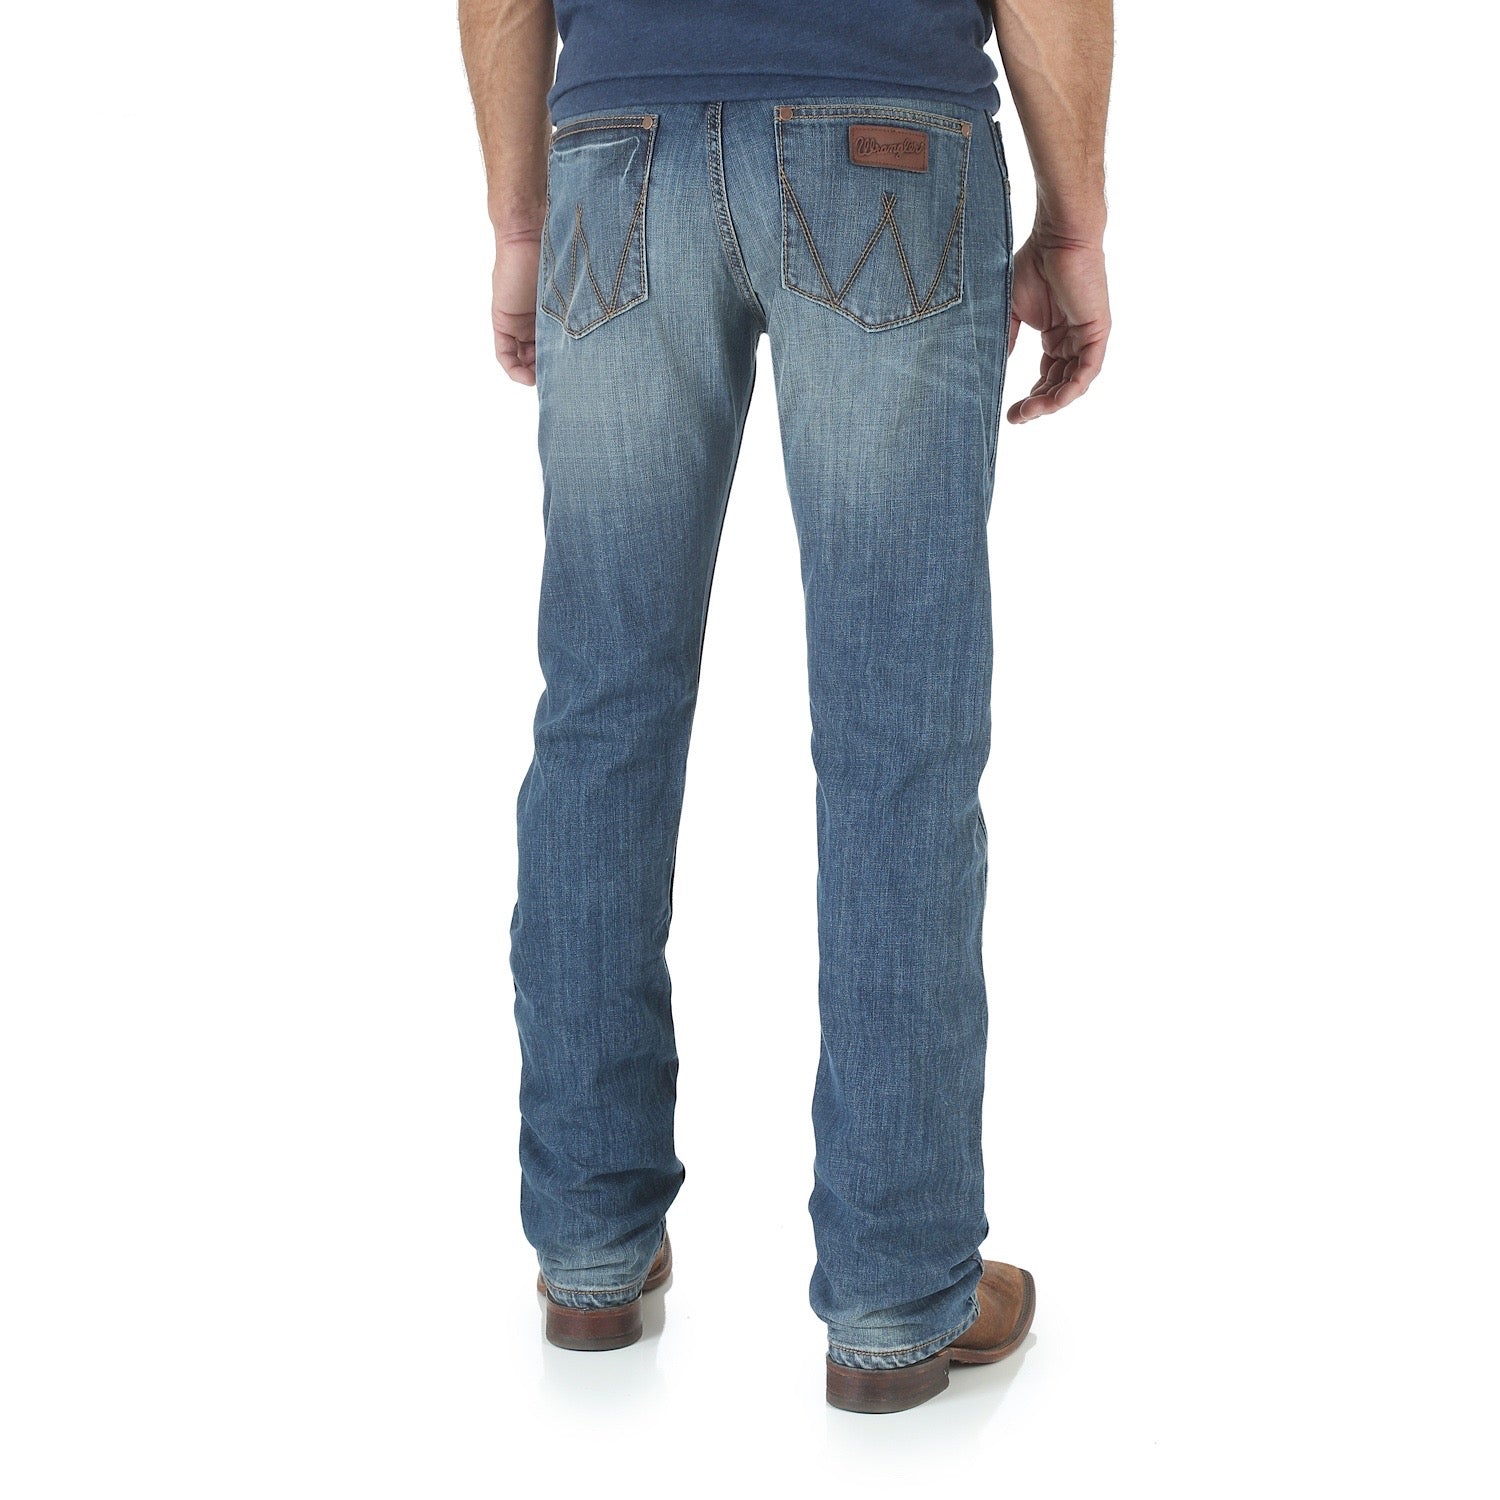 Buy Wrangler Mens Retro Slim Straight Jean 34